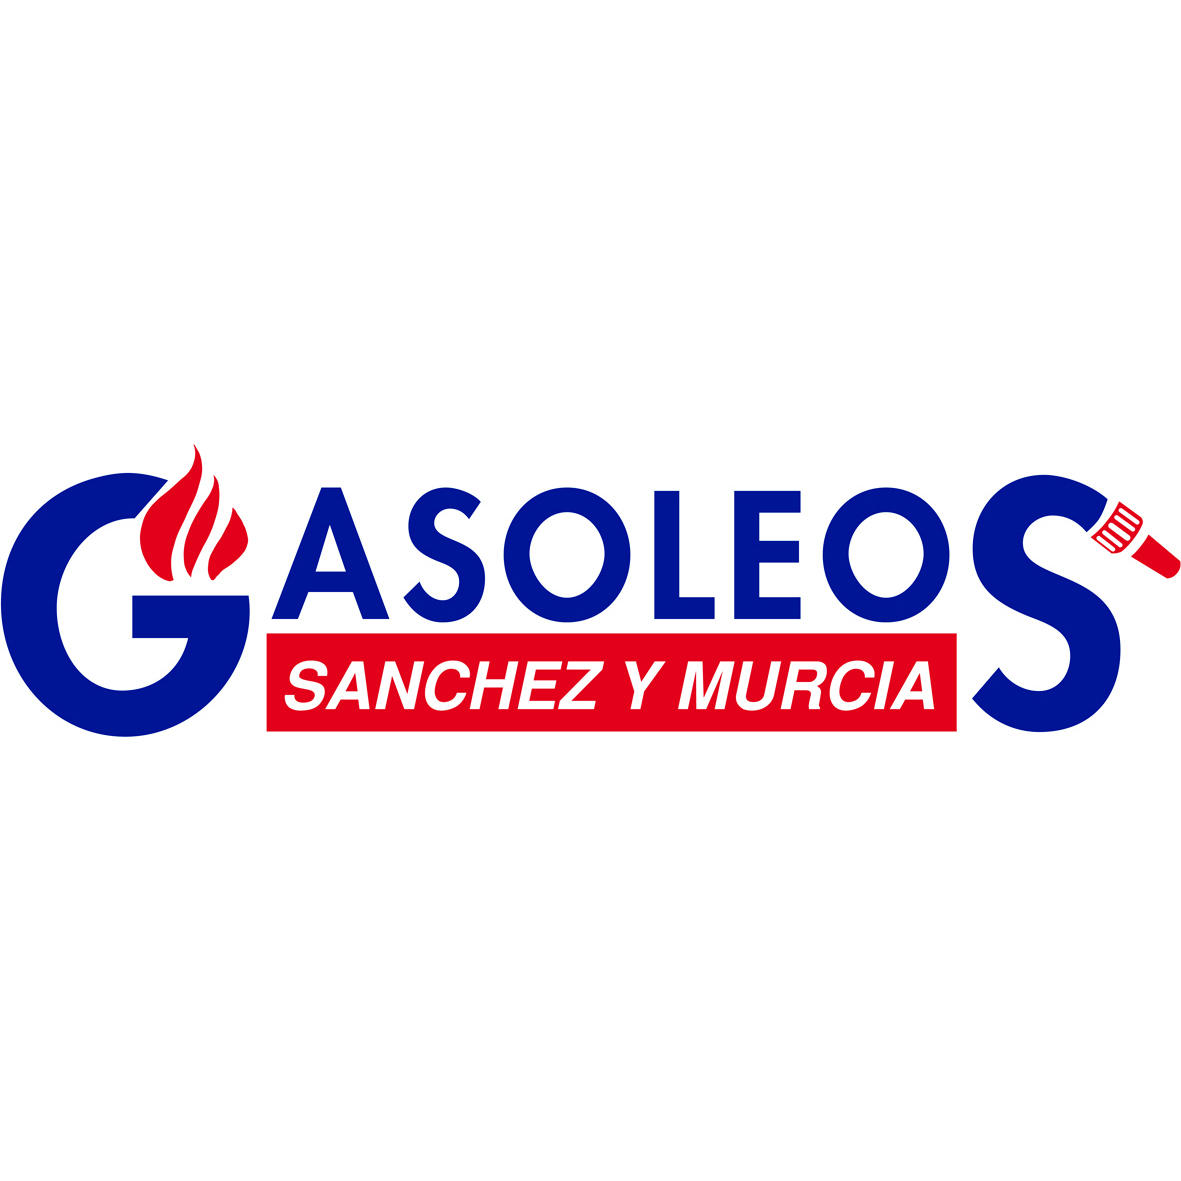 Gasoleos Sánchez y Murcia Logo